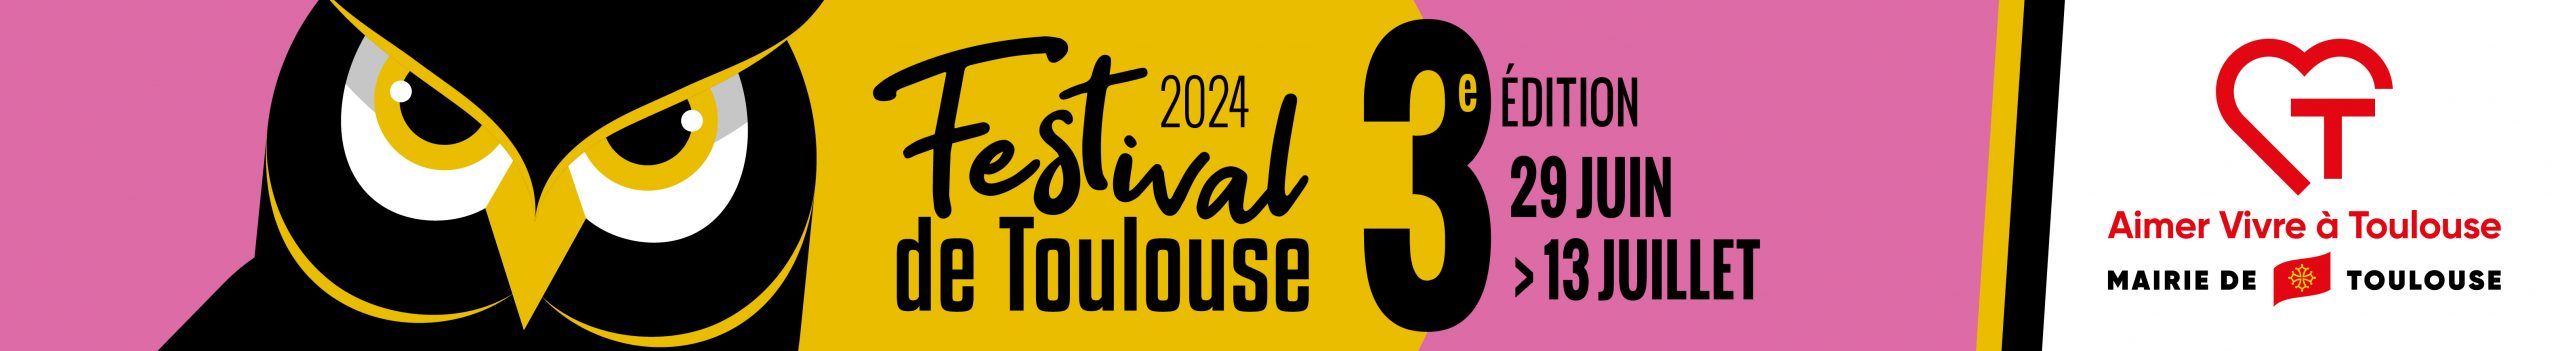 Festival de Toulouse – Edition 2024 site